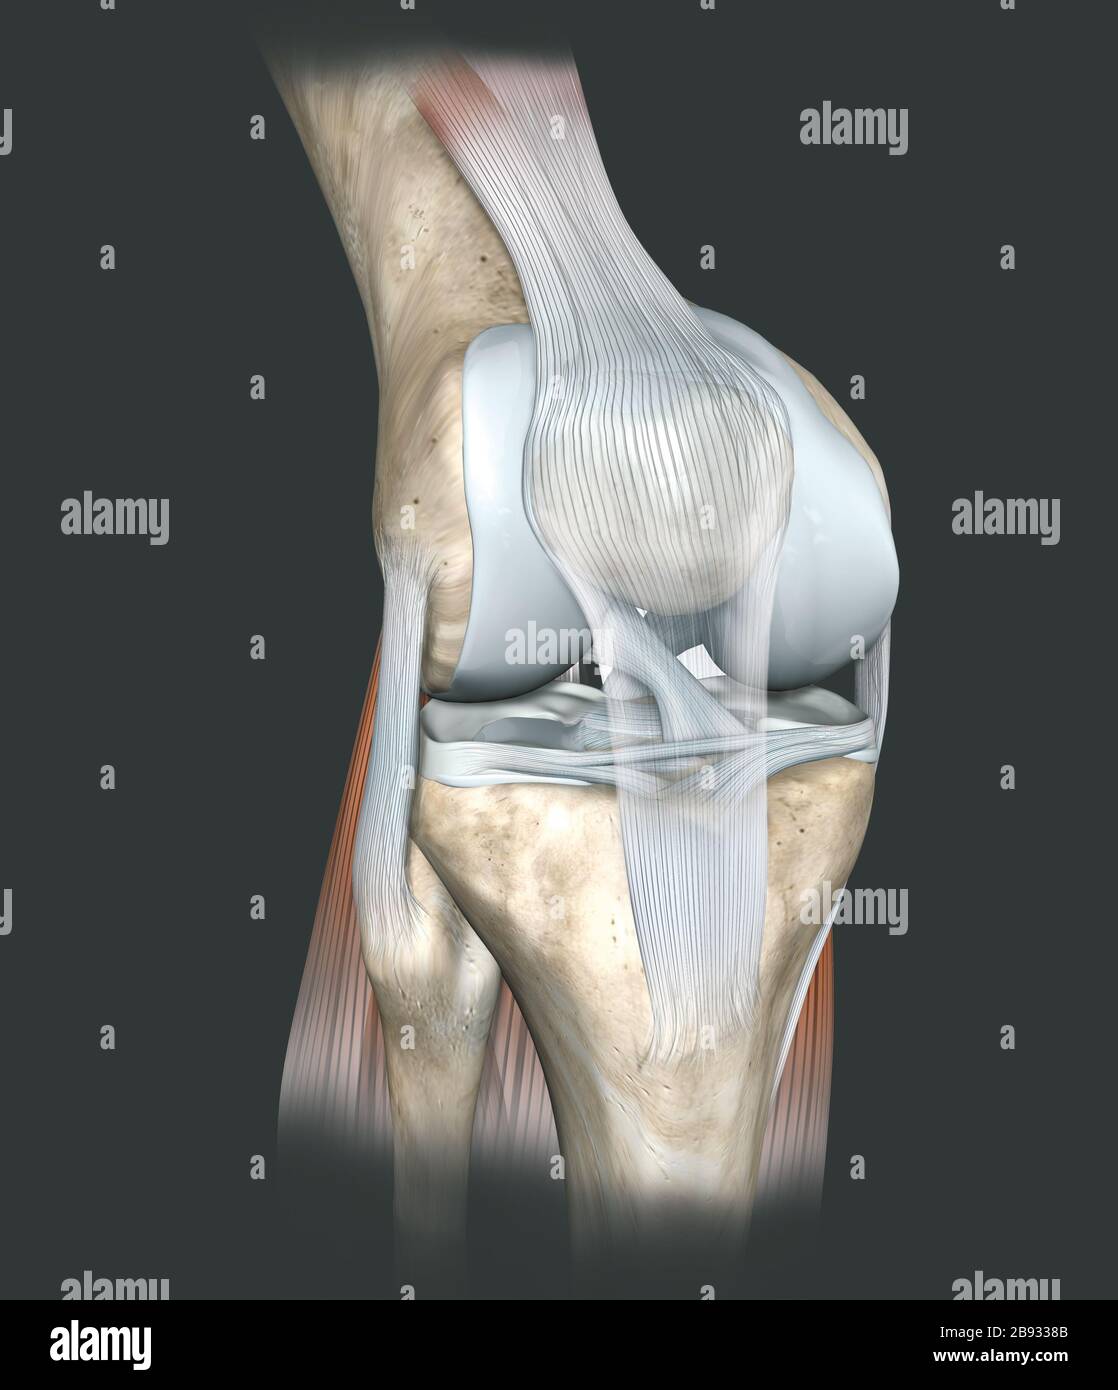 Illustrazione 3D che mostra l'articolazione del ginocchio umano con femore, cartilagine articolare, menisco, legamento collaterale mediale, cartilagine articolare, rotula, ginocchio, Foto Stock